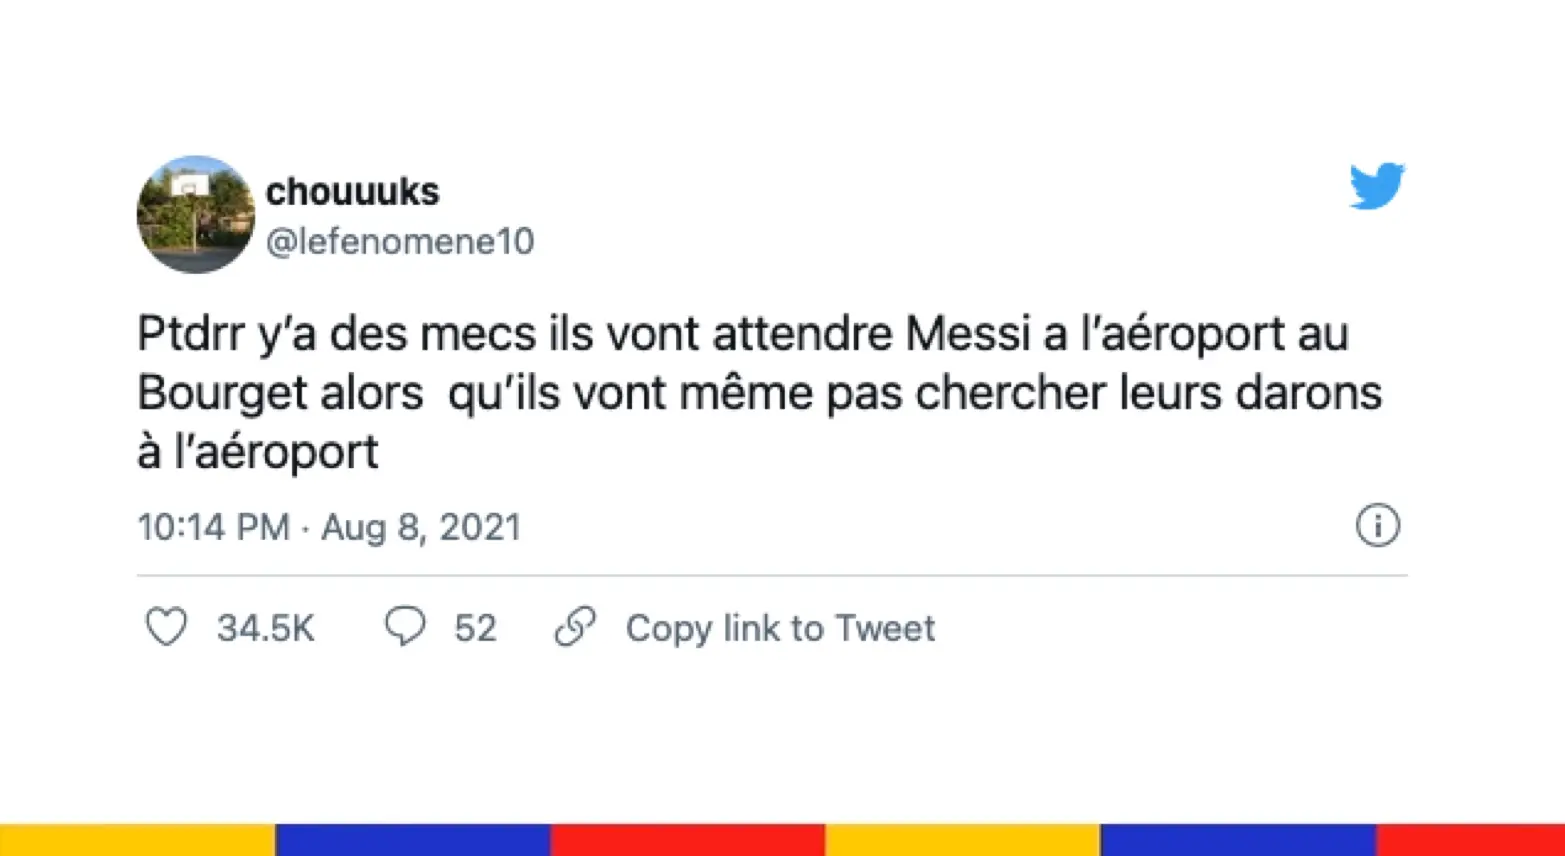 Le grand n’importe quoi des réseaux sociaux : Messi n’est pas (encore) arrivé au Bourget